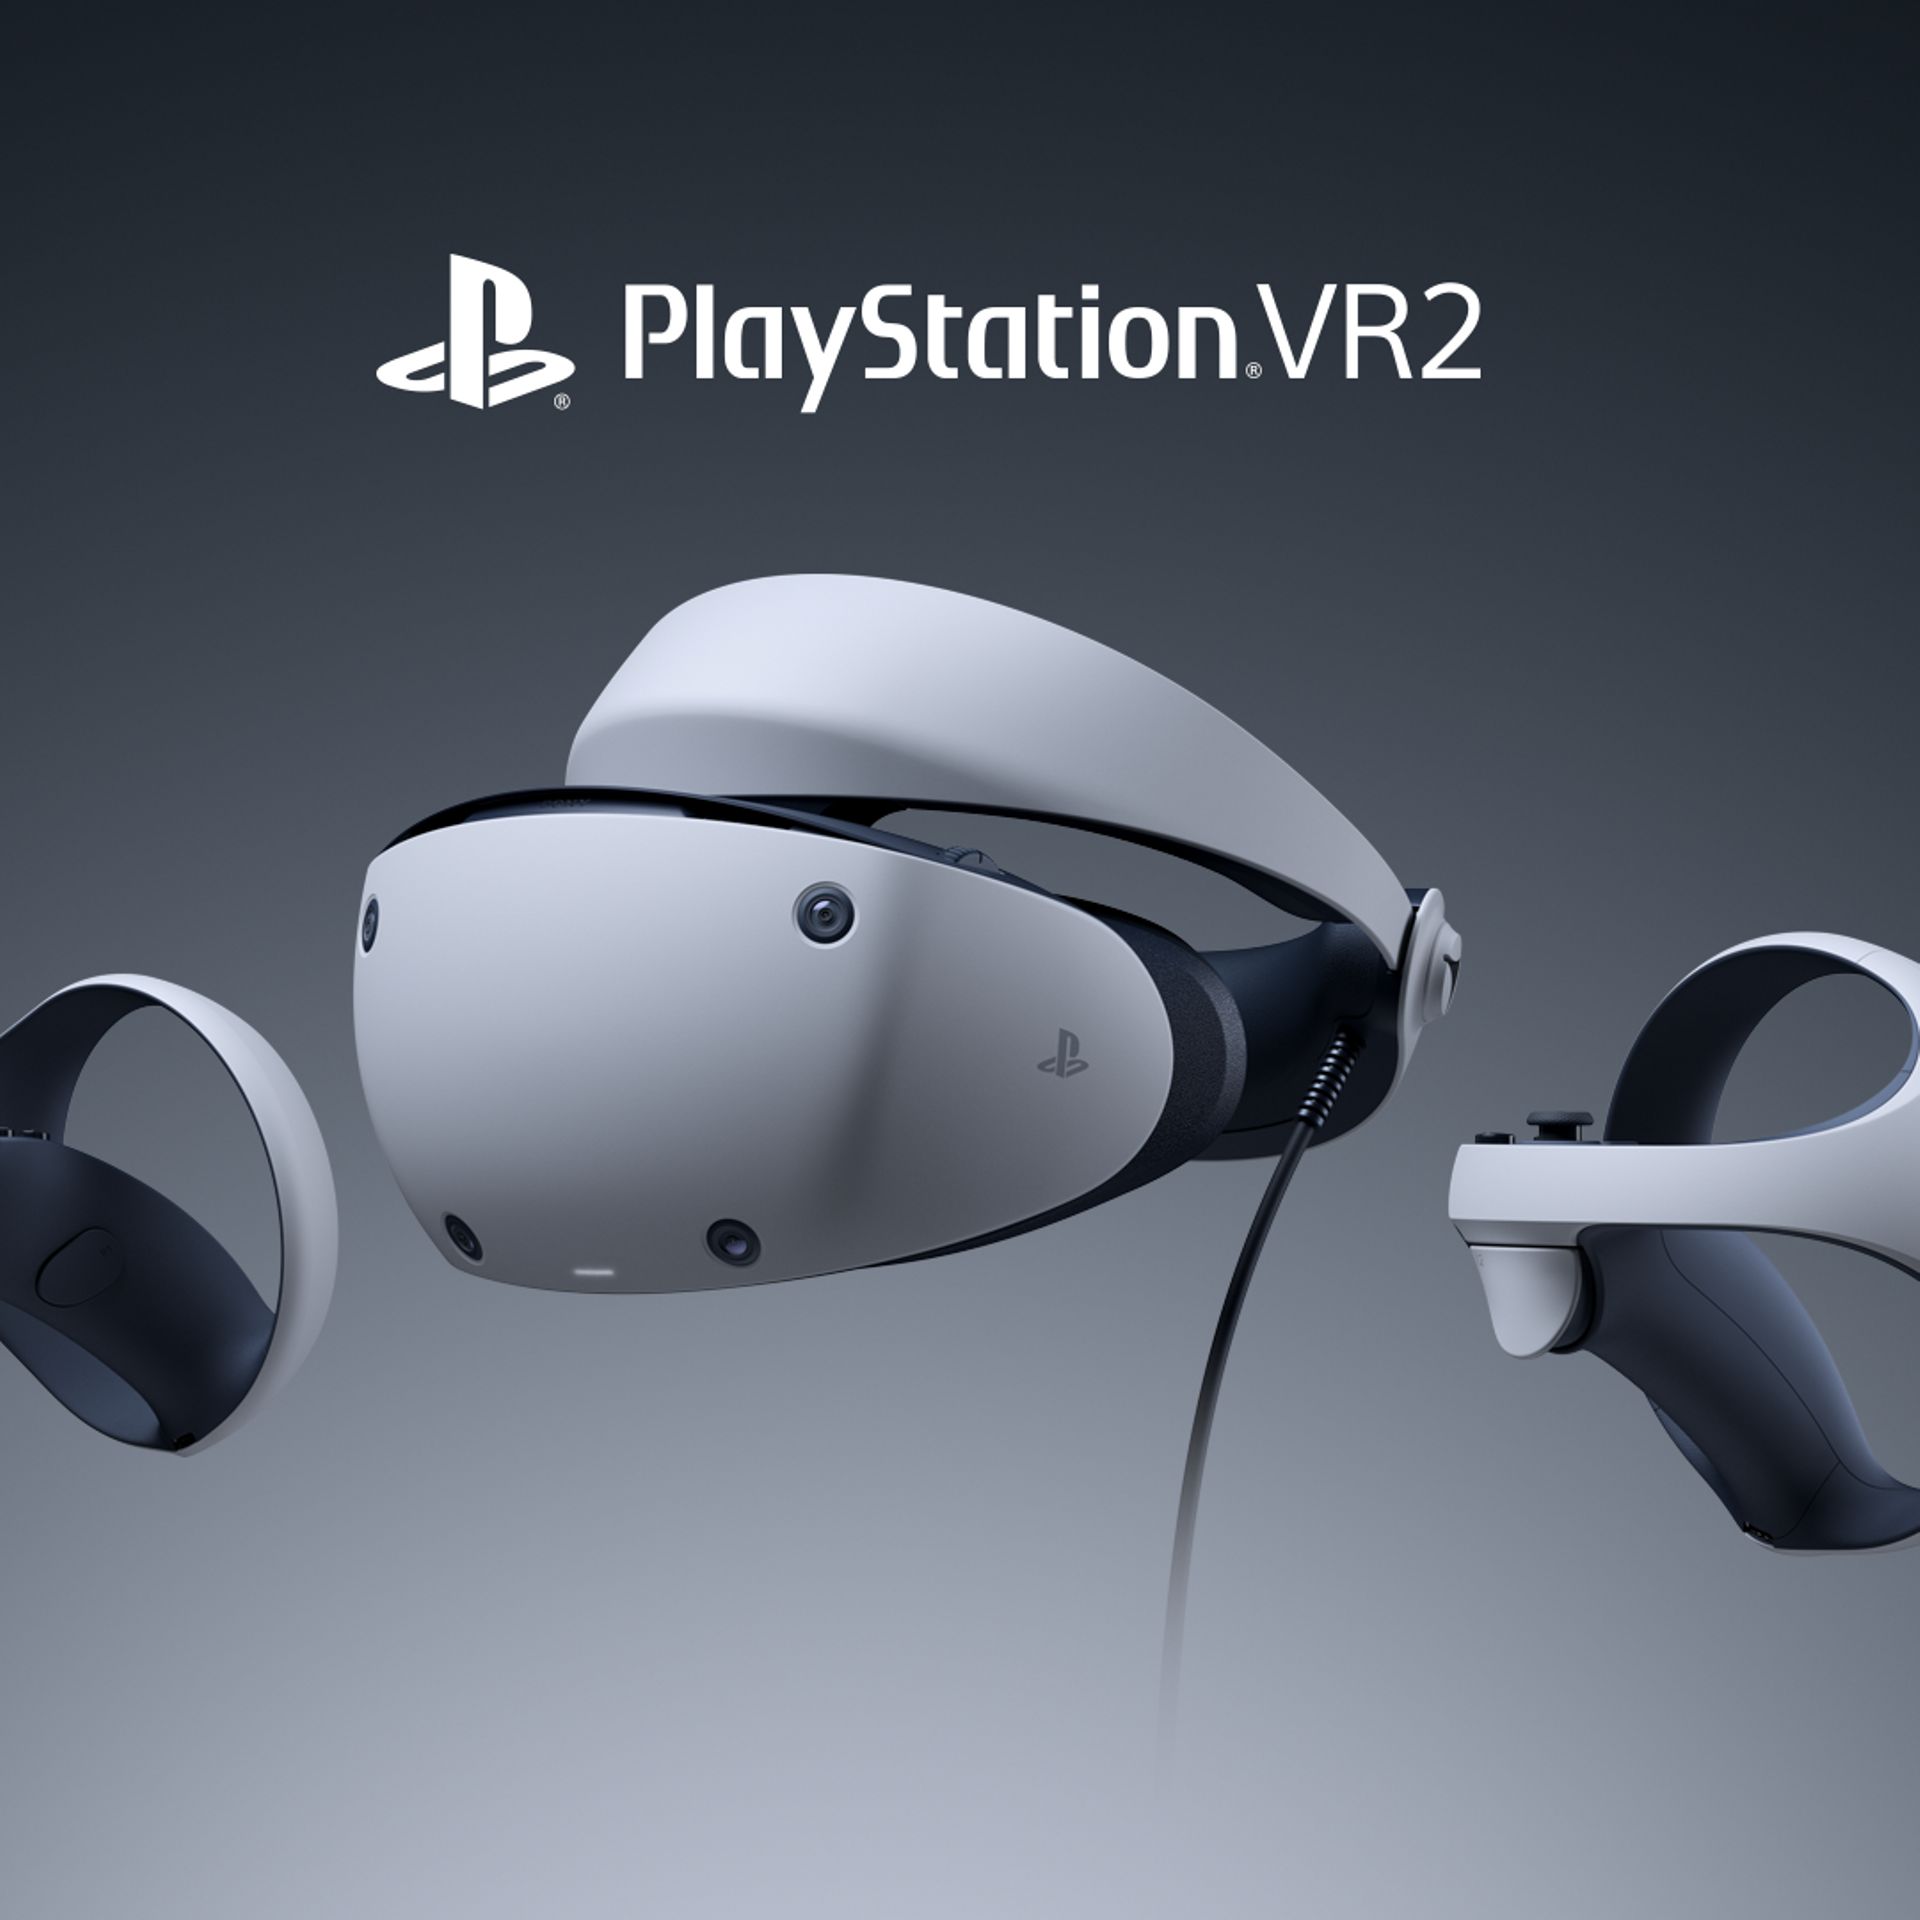 Un nouveau casque Sony sans fil pour PlayStation 4, et tous les